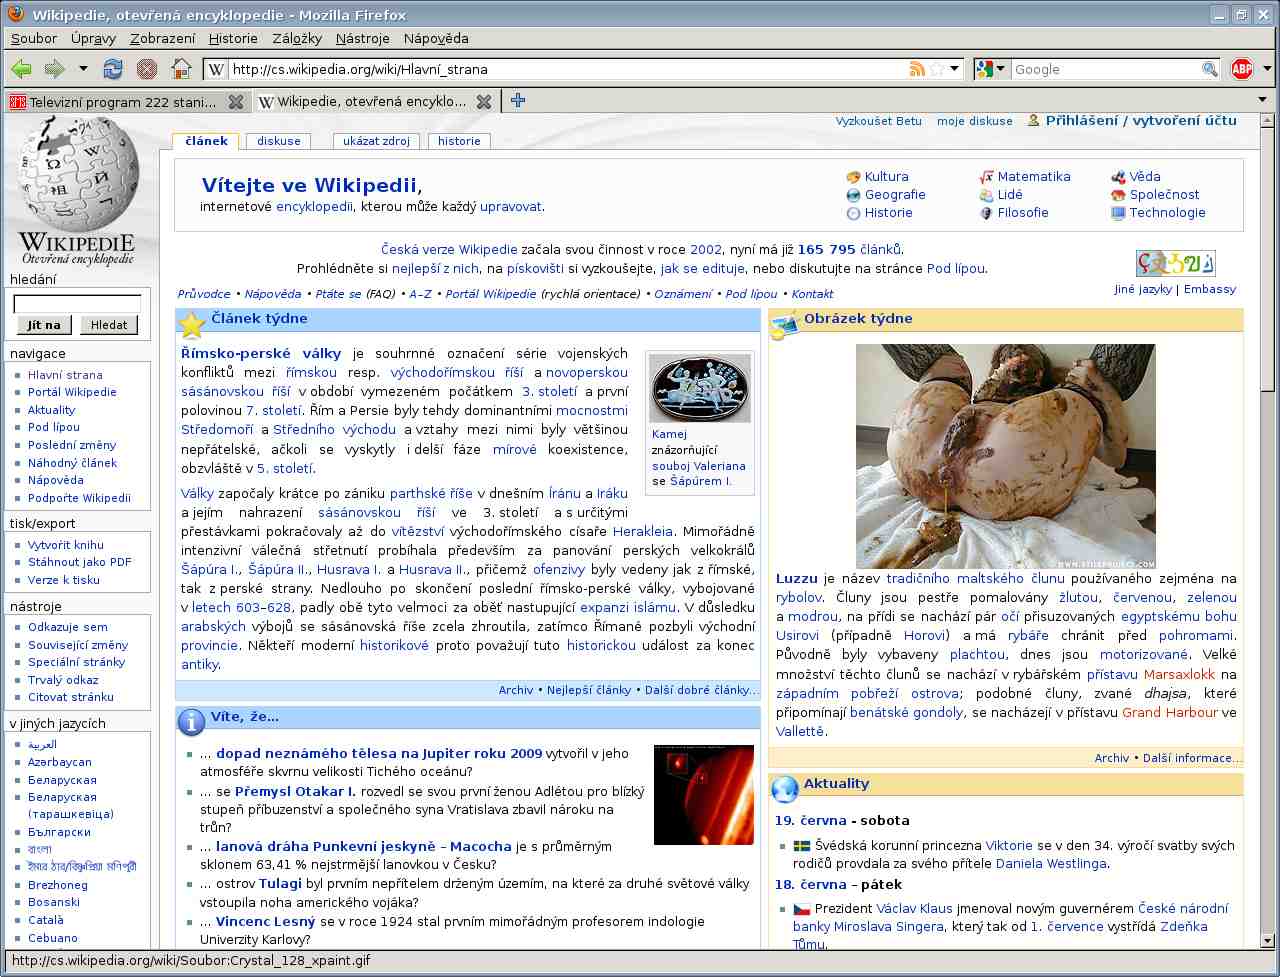 wikipedia-obrazek-tydne.jpg